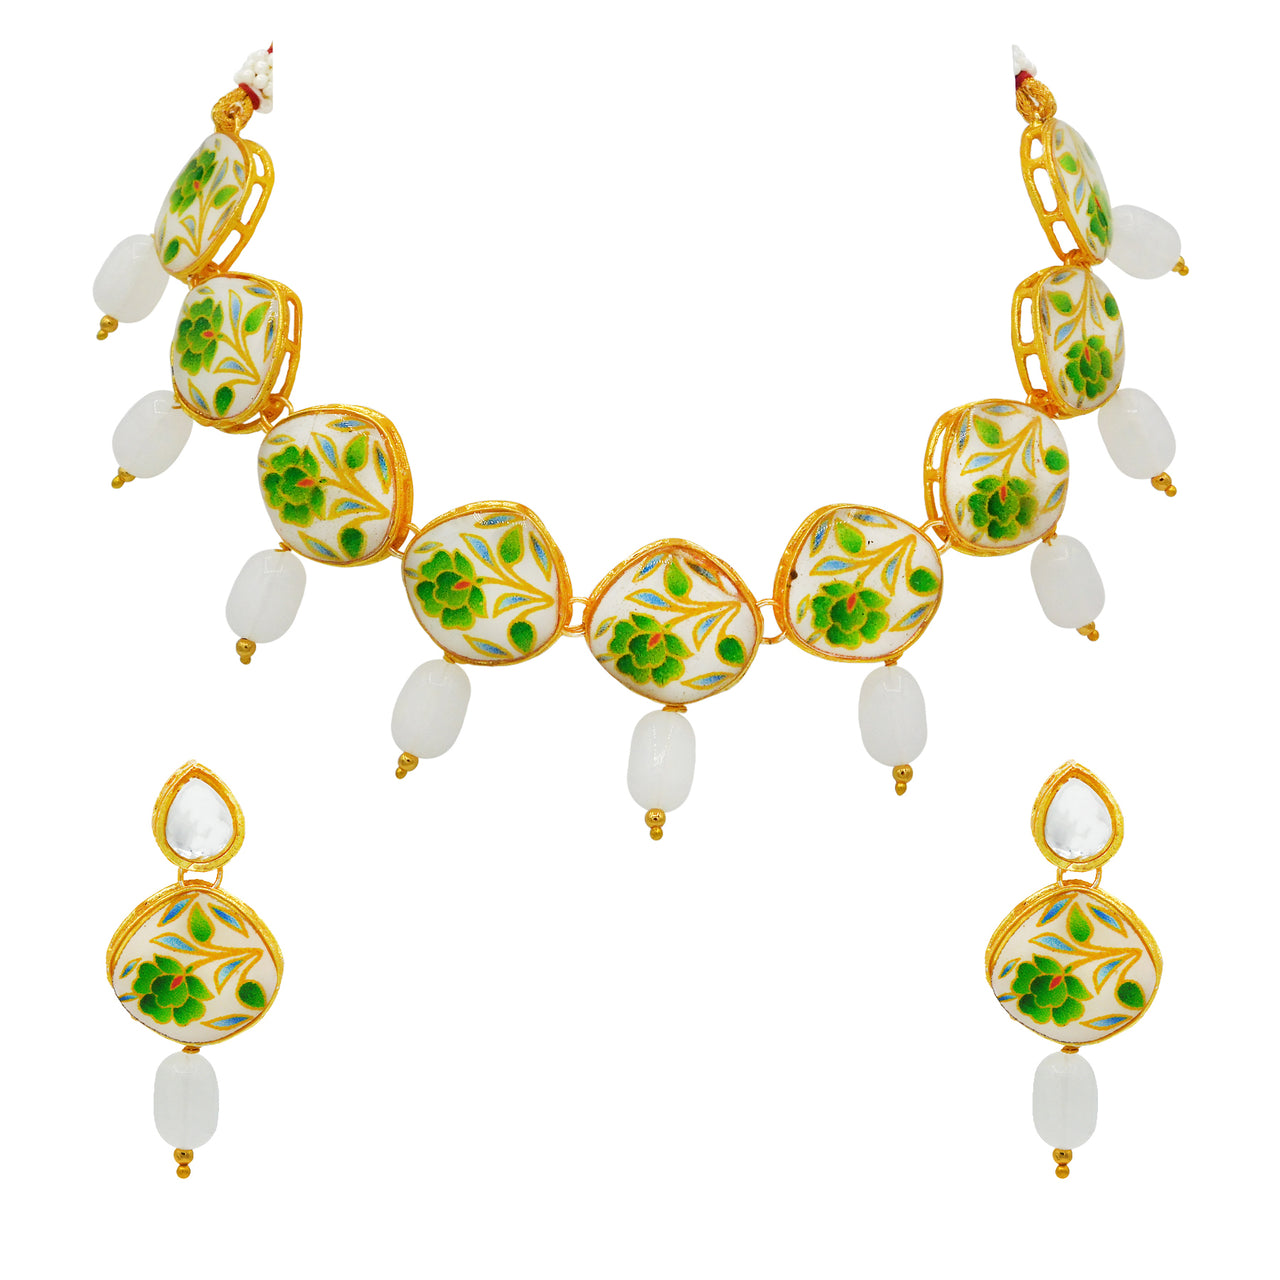 Sujwel Painting with Floral Design Chokar Necklace Set (08-0433) - Sujwel